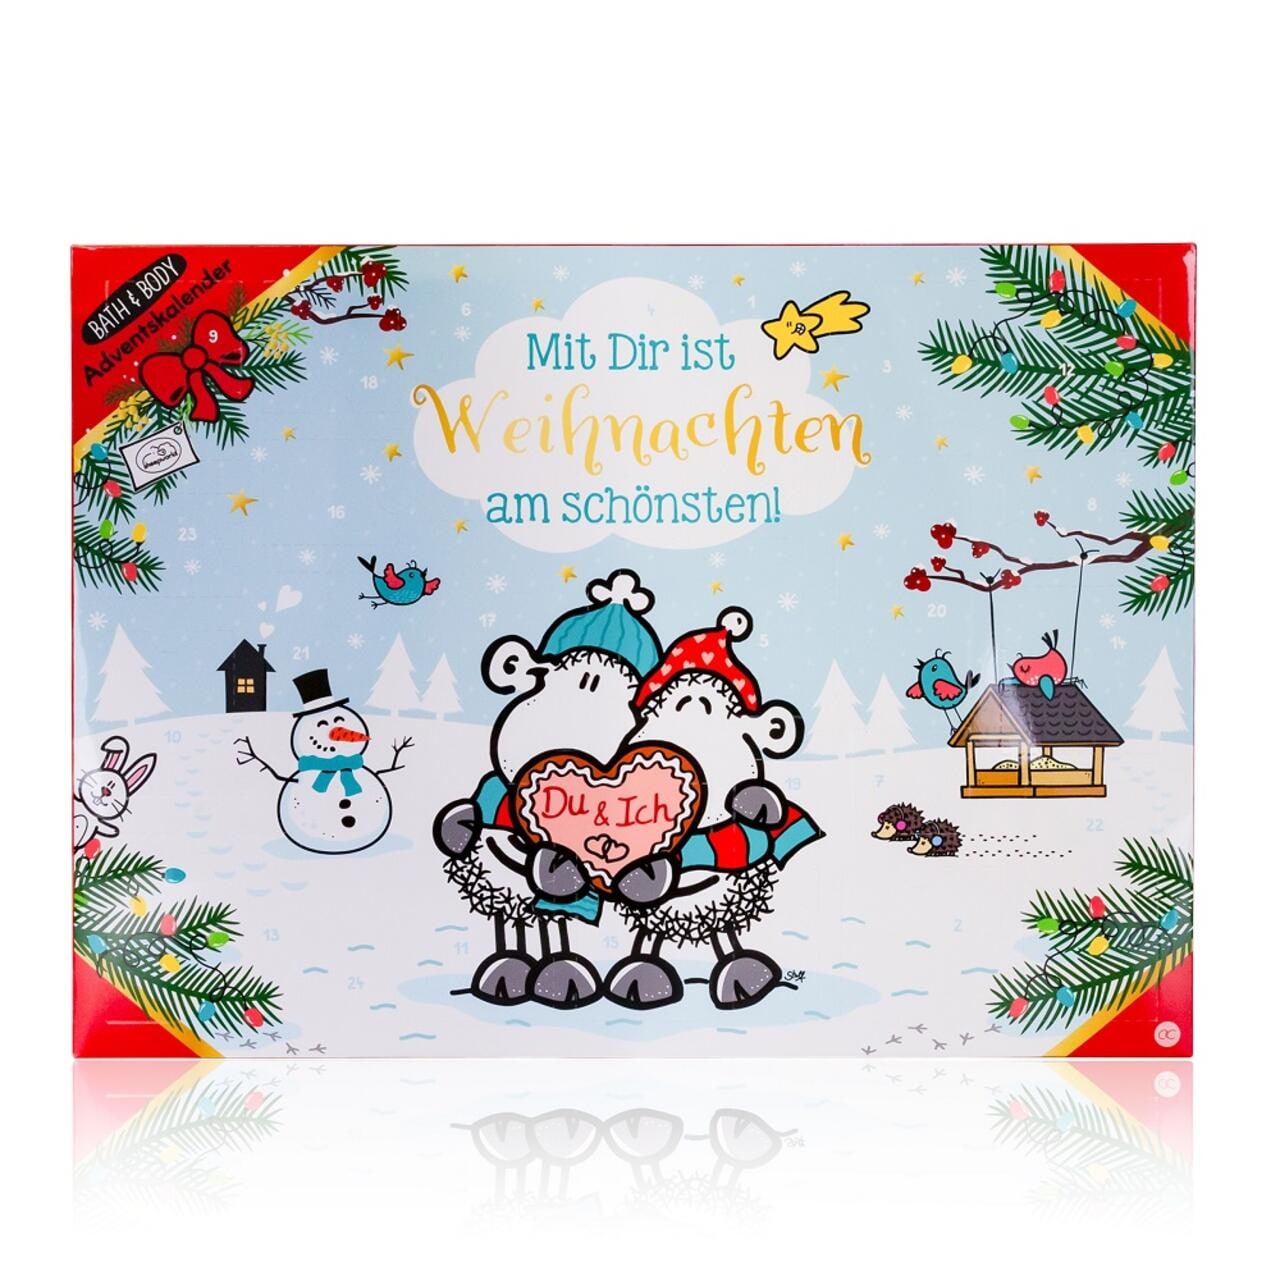 Accentra Adventskalender SHEEPWORLD "Mit Dir ist Weihnachten am schönsten" 46x4x34cm ✔️ online kaufen | DOUGLAS